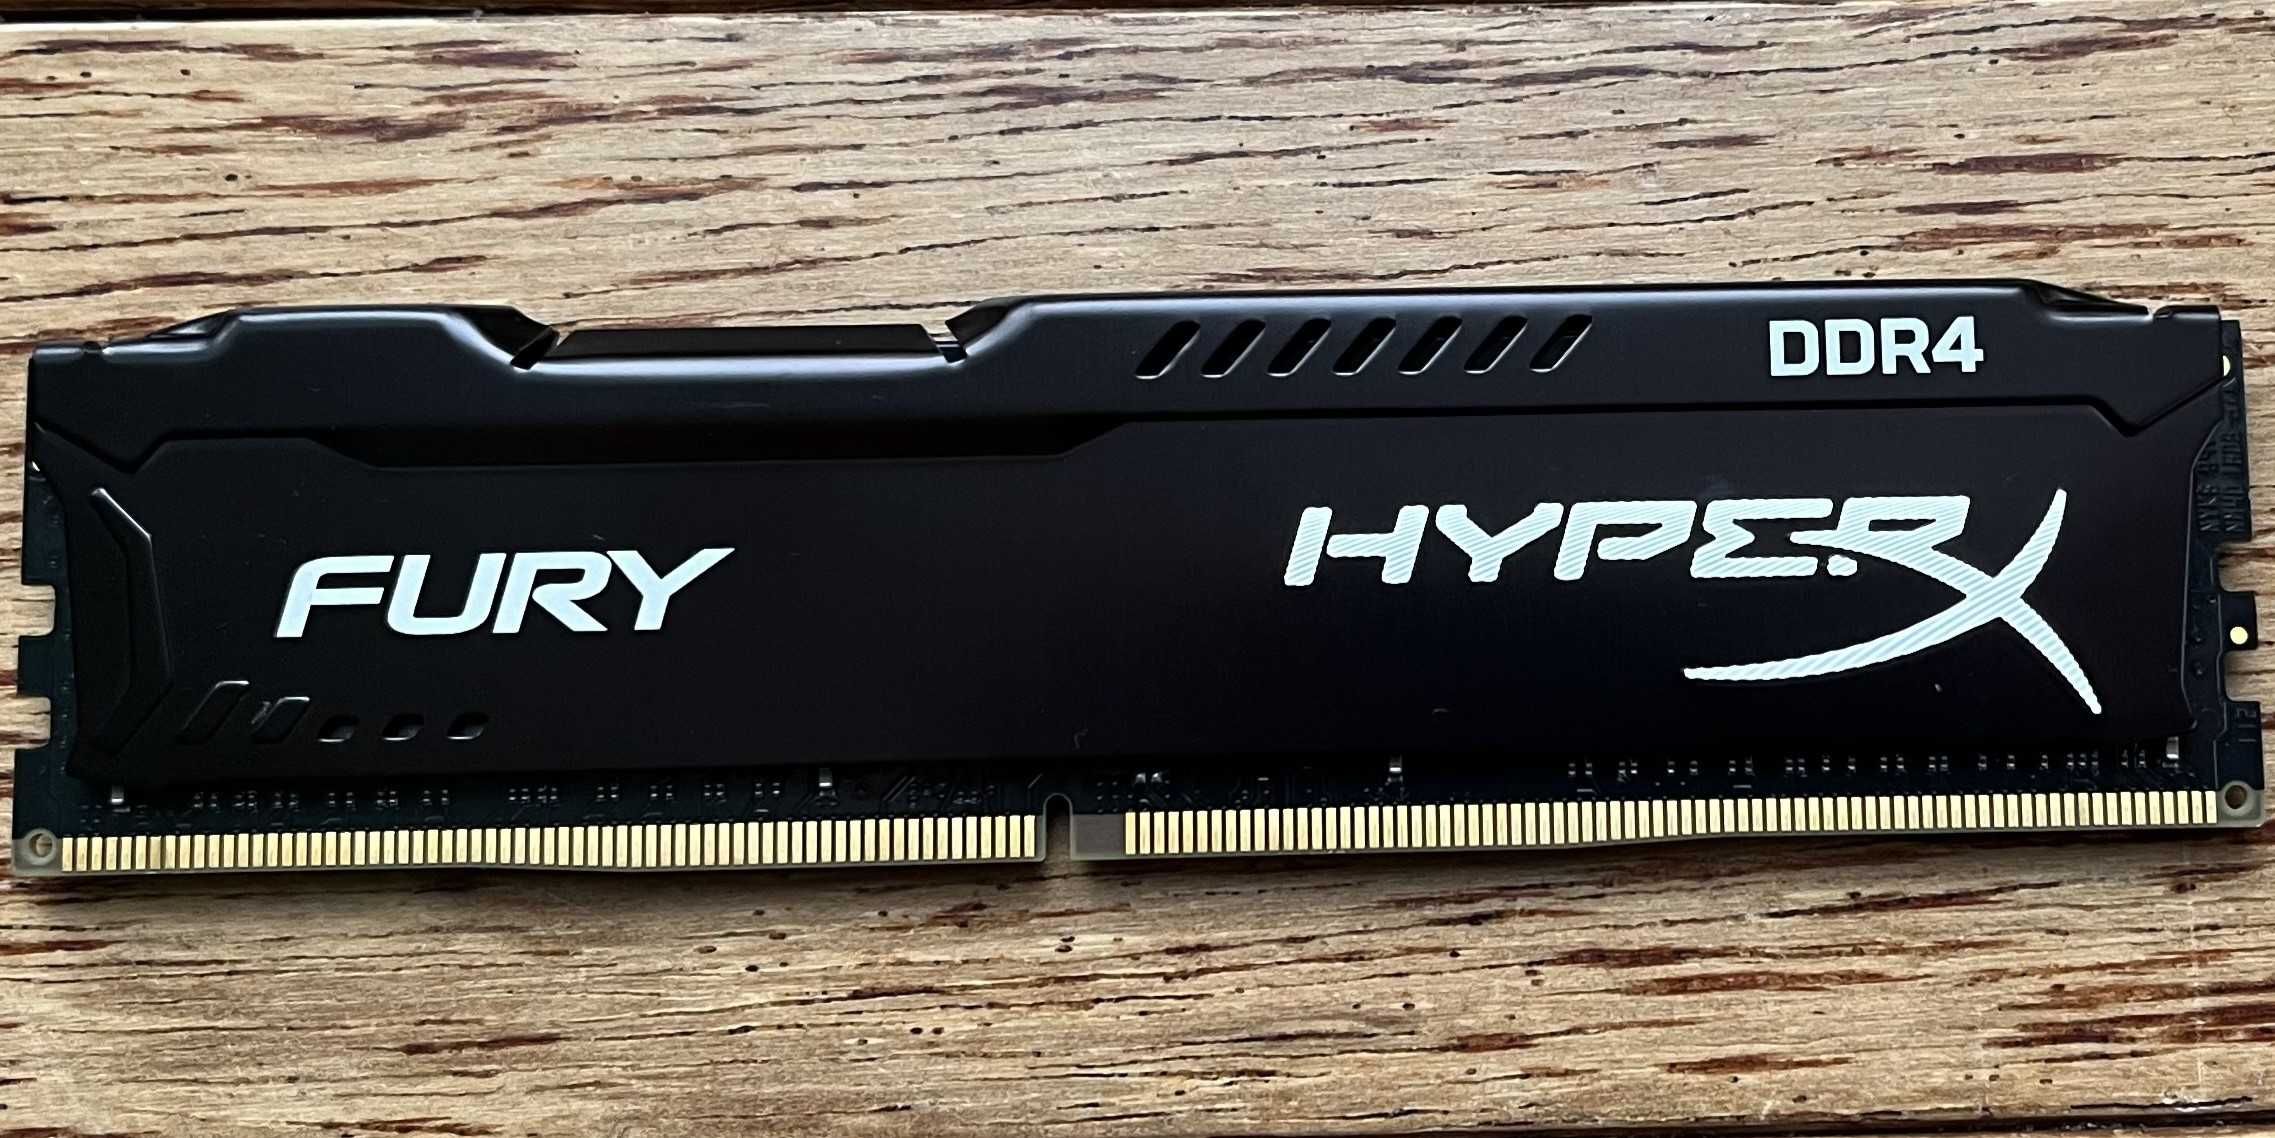 Pamięć RAM DDR4 Kingston HyperX 16GB 2133MHZ CL14 do starszych płyt